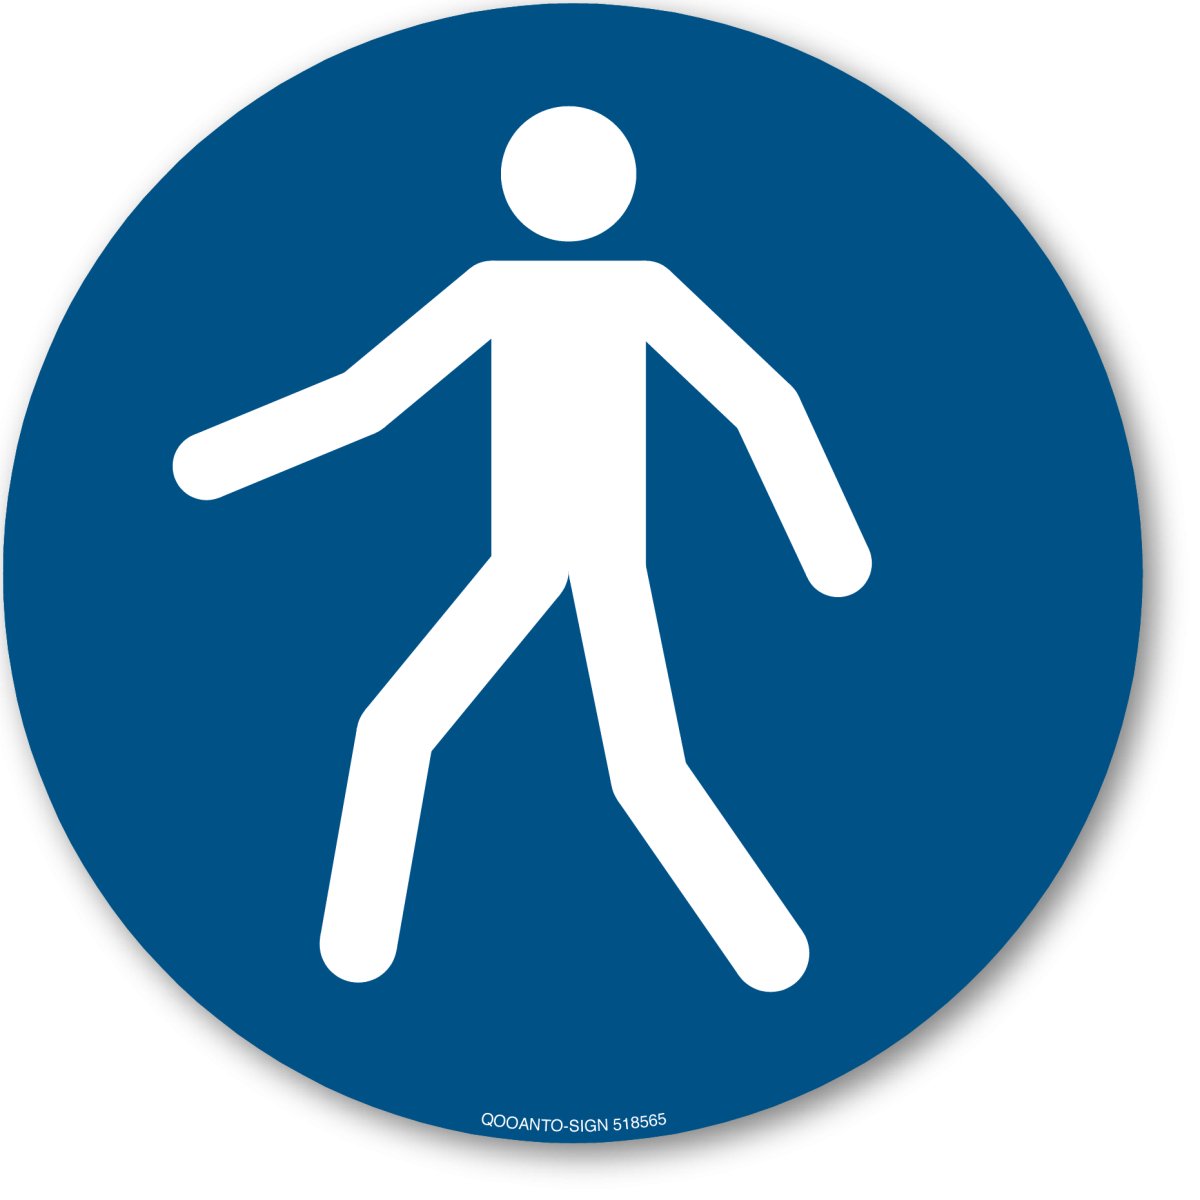 Fußgängerweg Benutzen, EN ISO 7010, M024 Gebotsschild oder Aufkleber aus Alu-Verbund oder Selbstklebefolie mit UV-Schutz - QOOANTO-SIGN